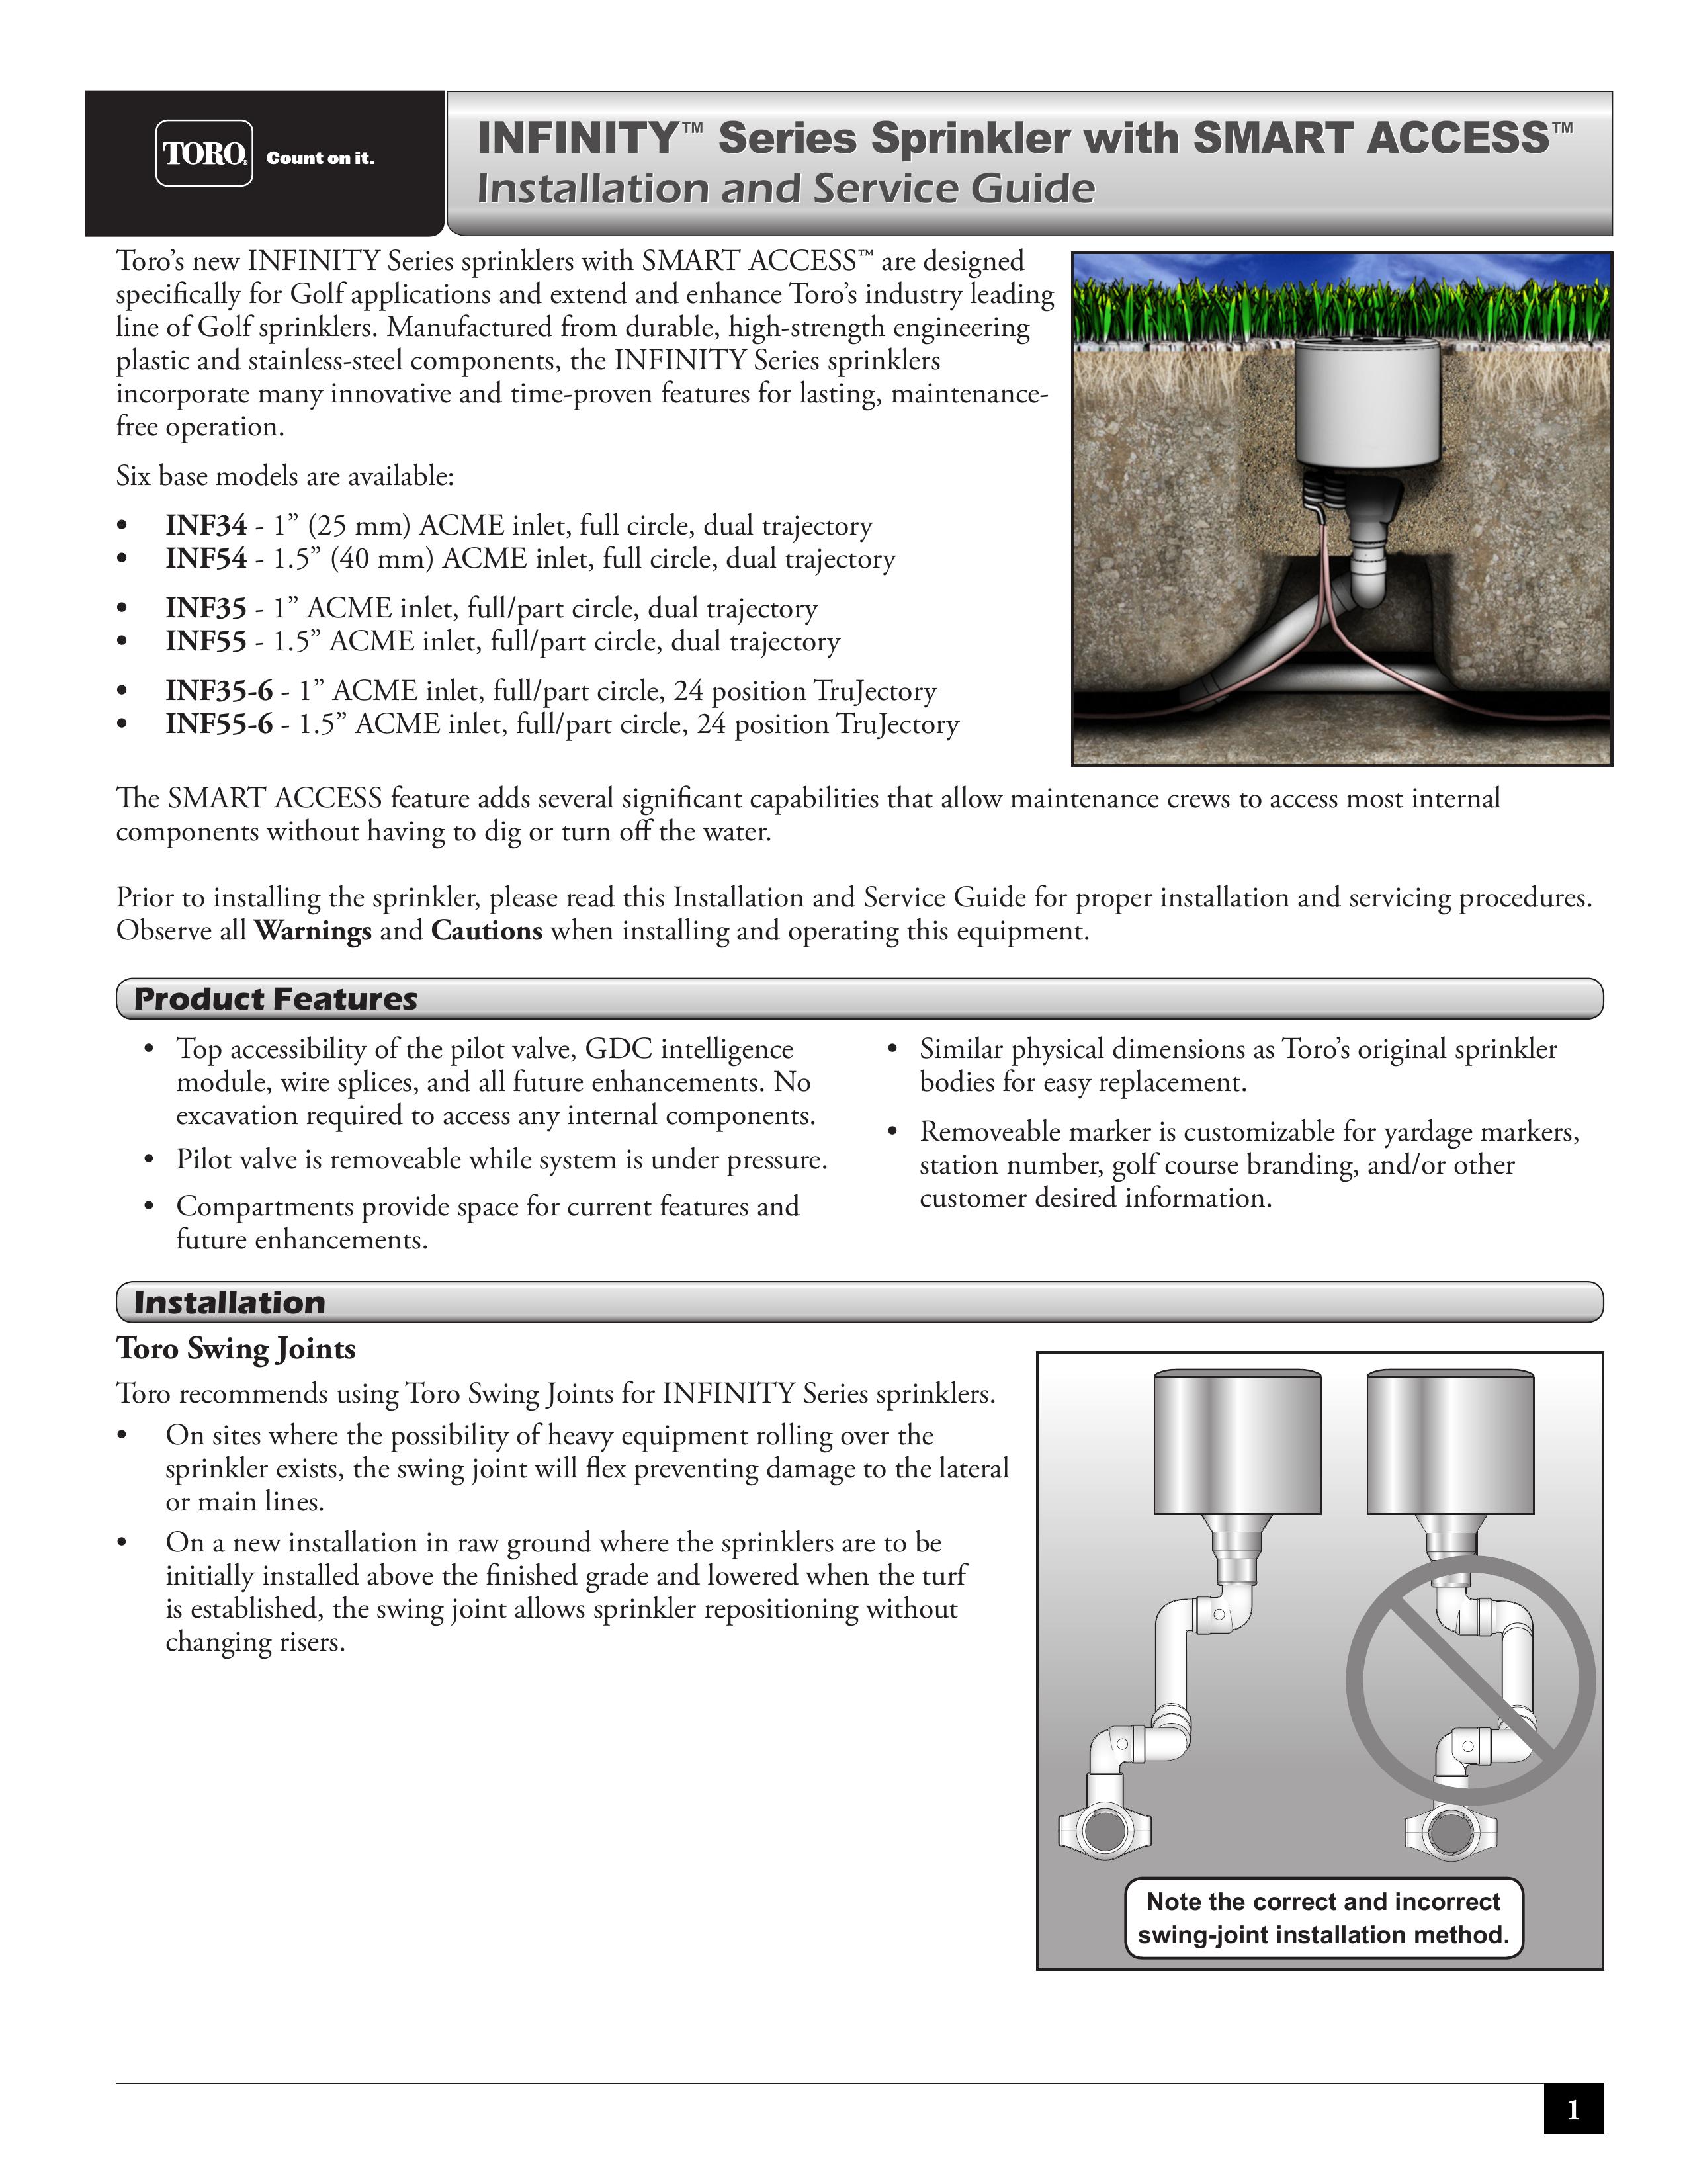 Toro INF55-6 Sprinkler User Manual